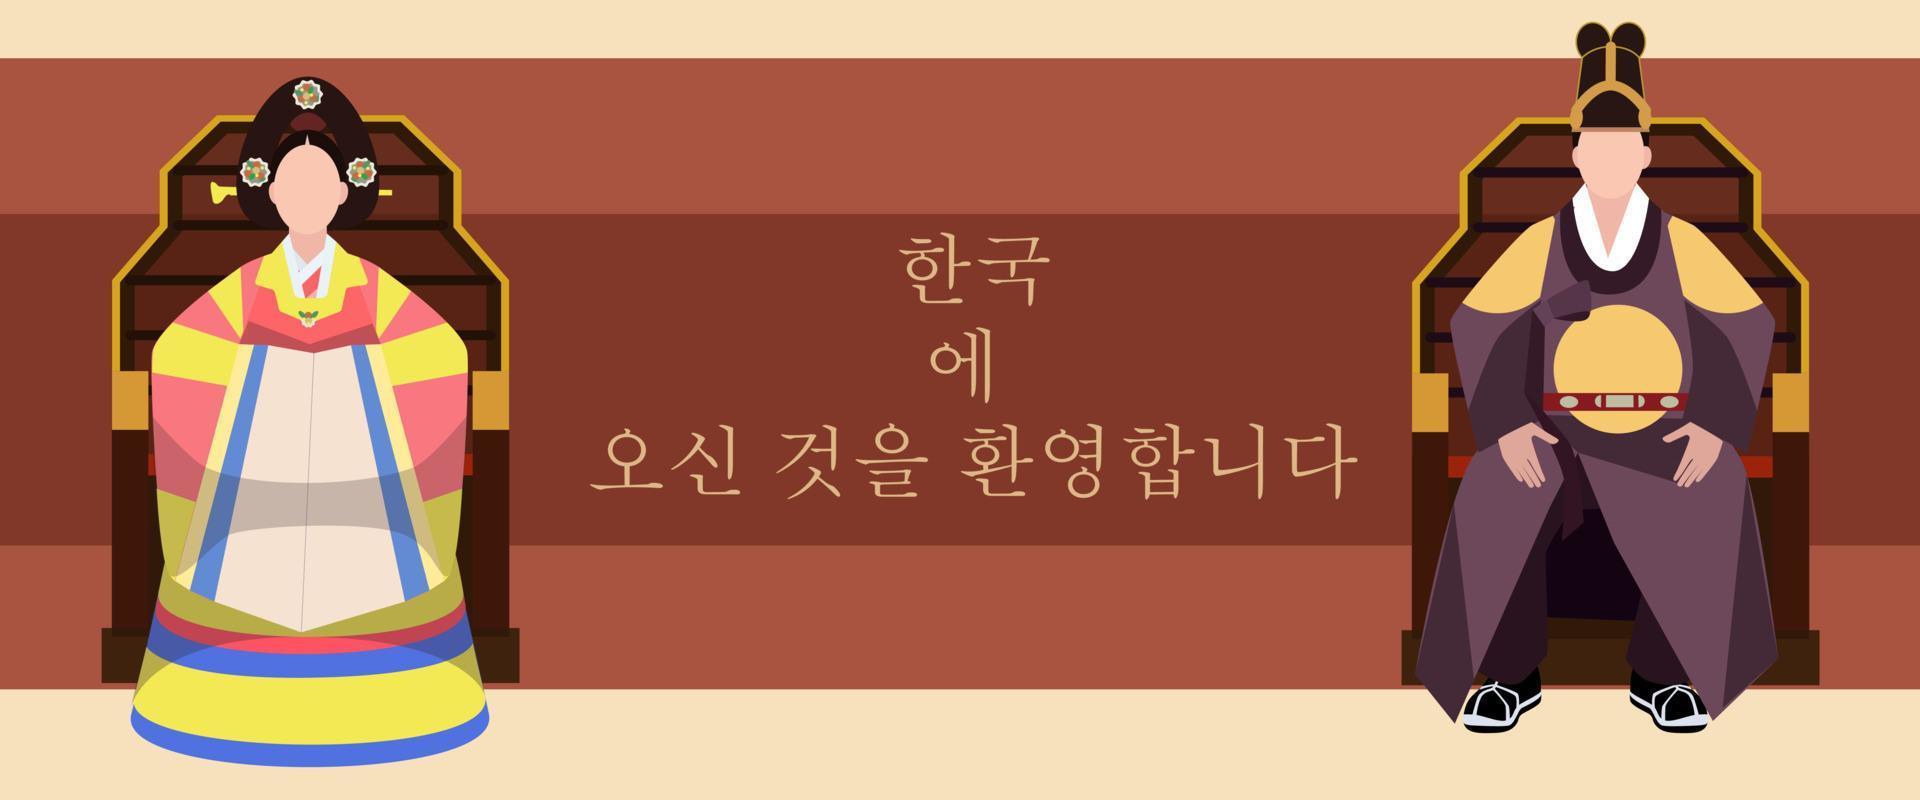 Welkom naar Korea. koningen in hanbok zitten Aan de troon en begroeten de nieuwkomers. Koreaans volk kleren voor koningen.vector illustratie in een vlak ontwerp stijl. de ontwerp is gemakkelijk. koningen banier, folder, afgedrukt. vector